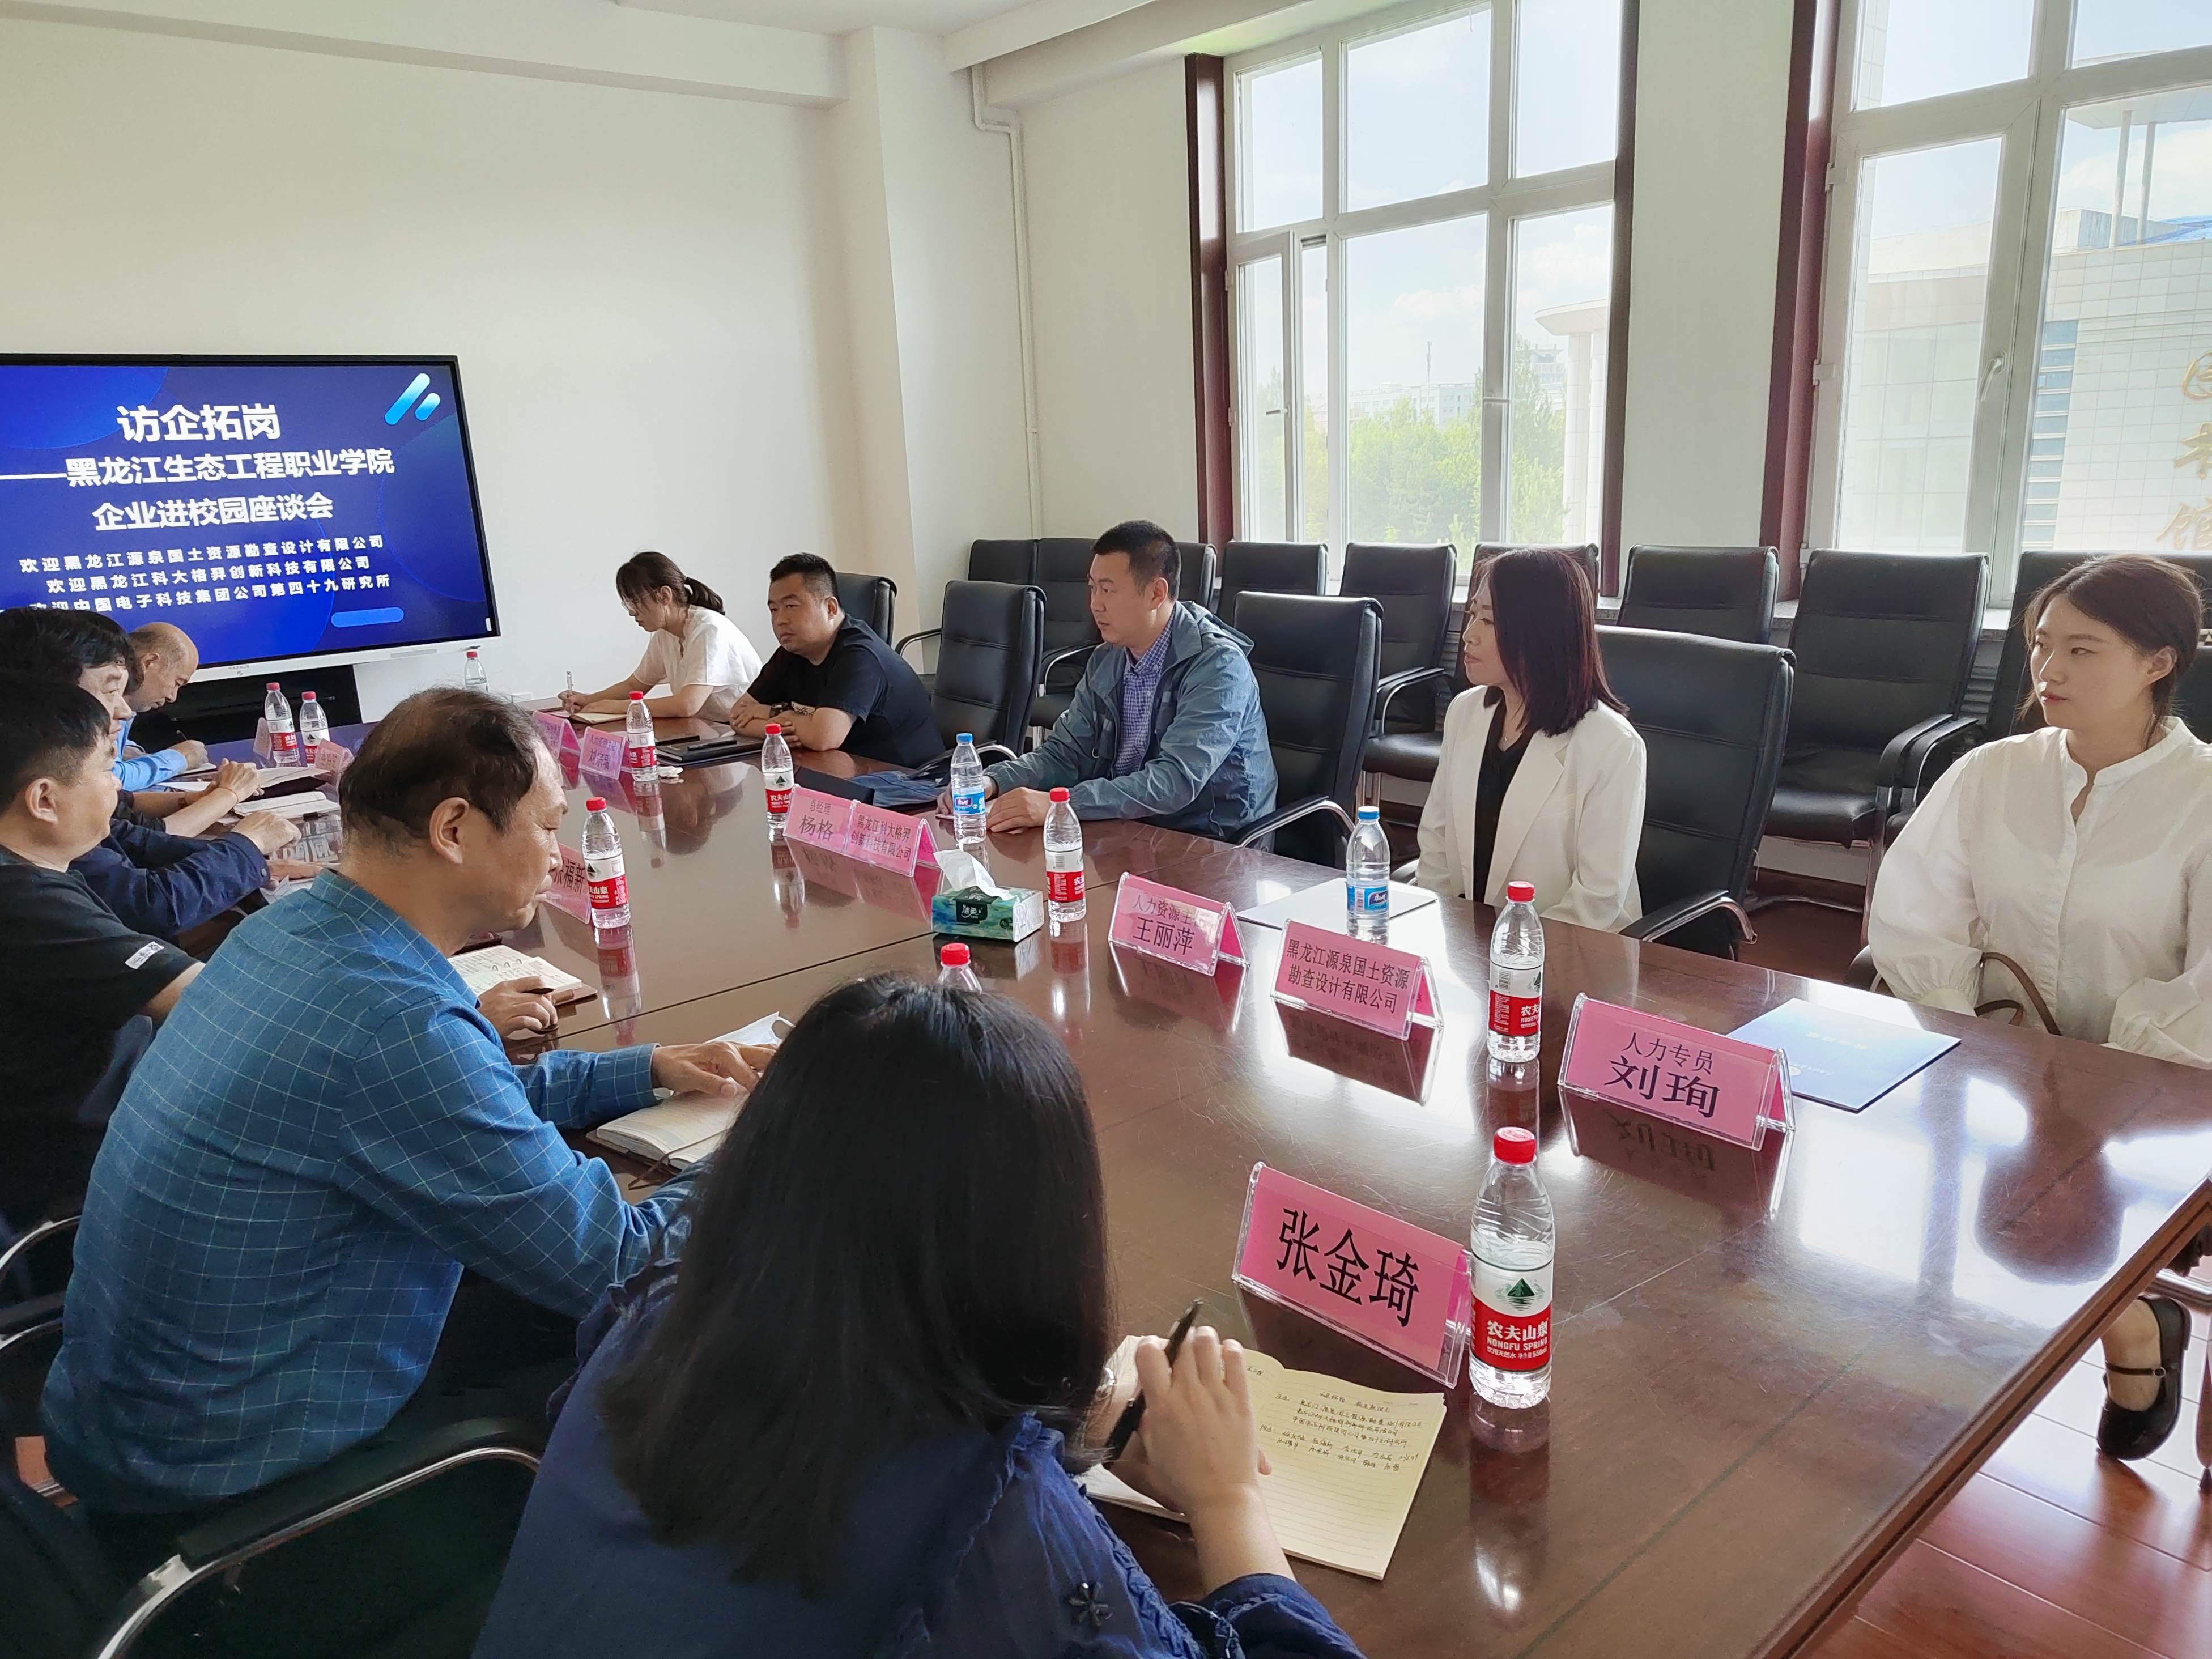 校企合作-黑龍江生態工程職業學院座談會